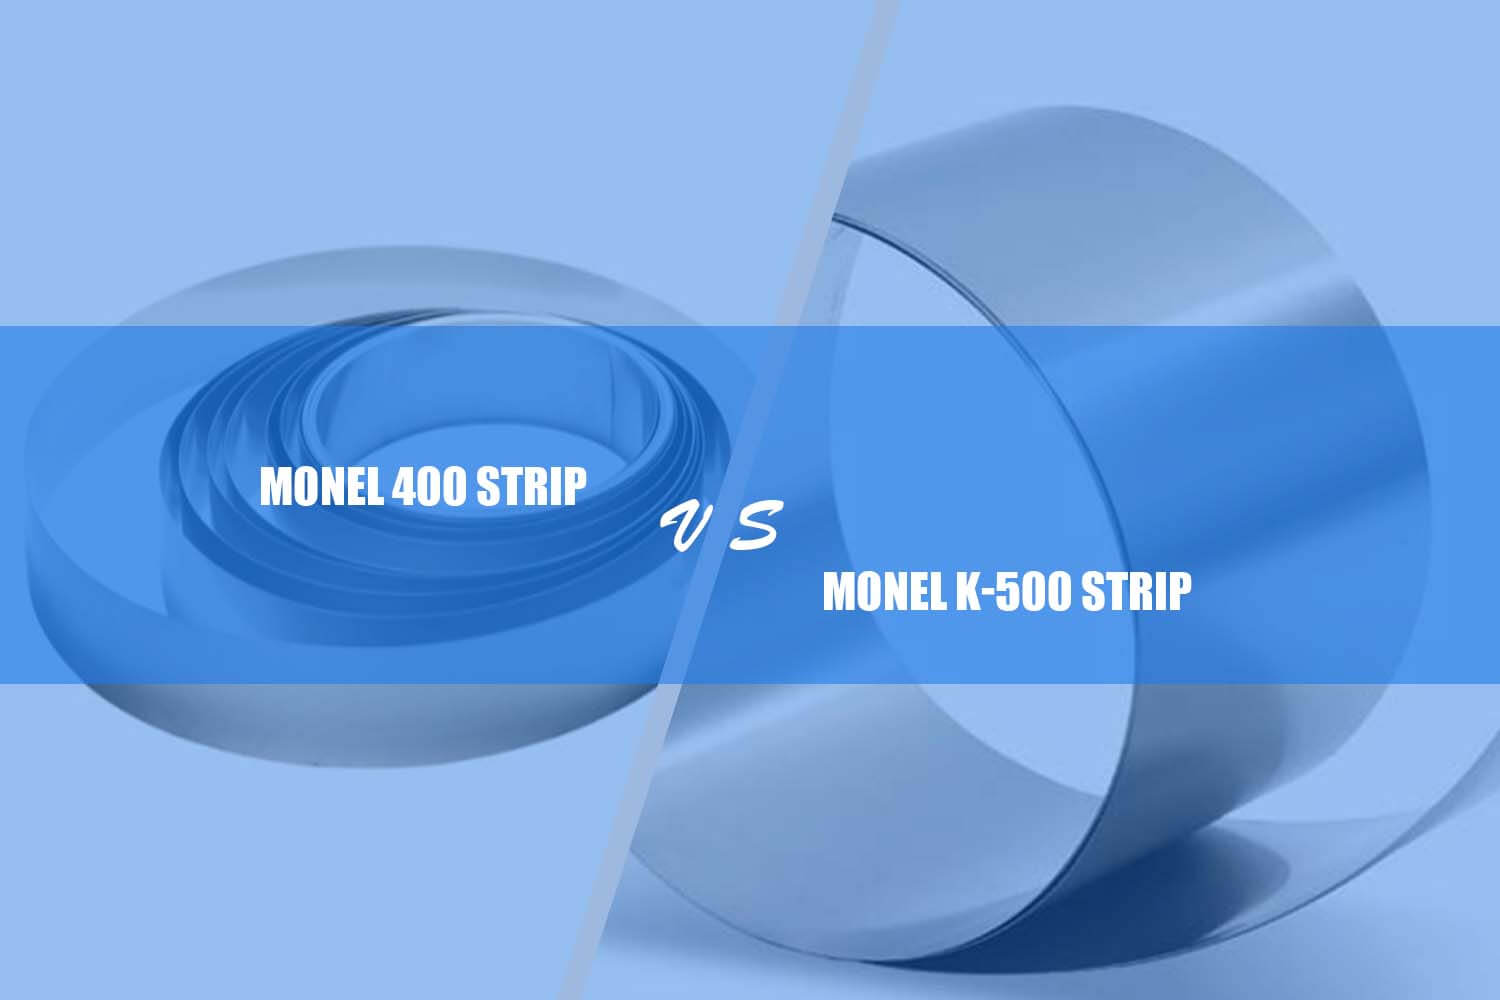 monel 400 vs. monel K-500 strip